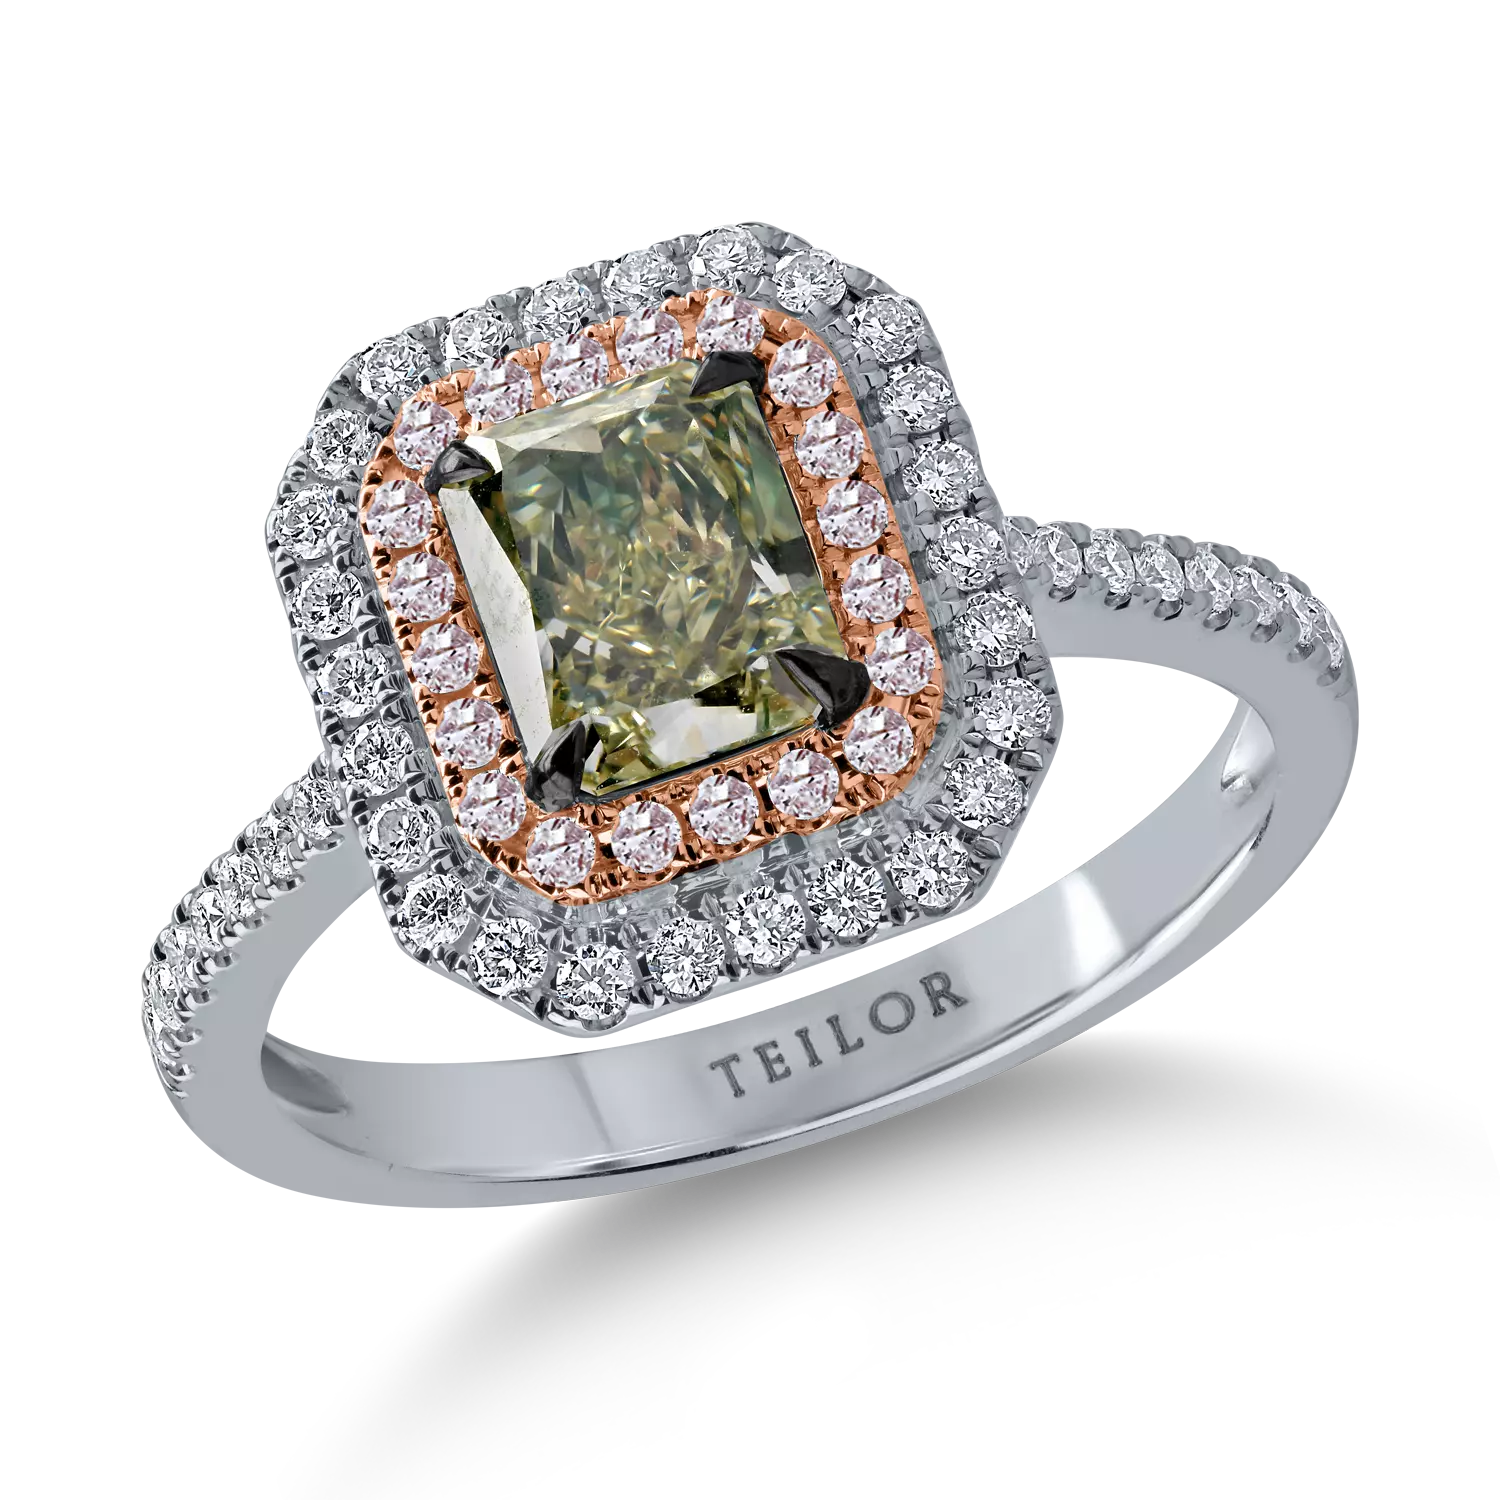 Inel din aur alb-roz cu un diamant verde central de 1.17ct si diamante incolore si roz halo pave de 0.44ct